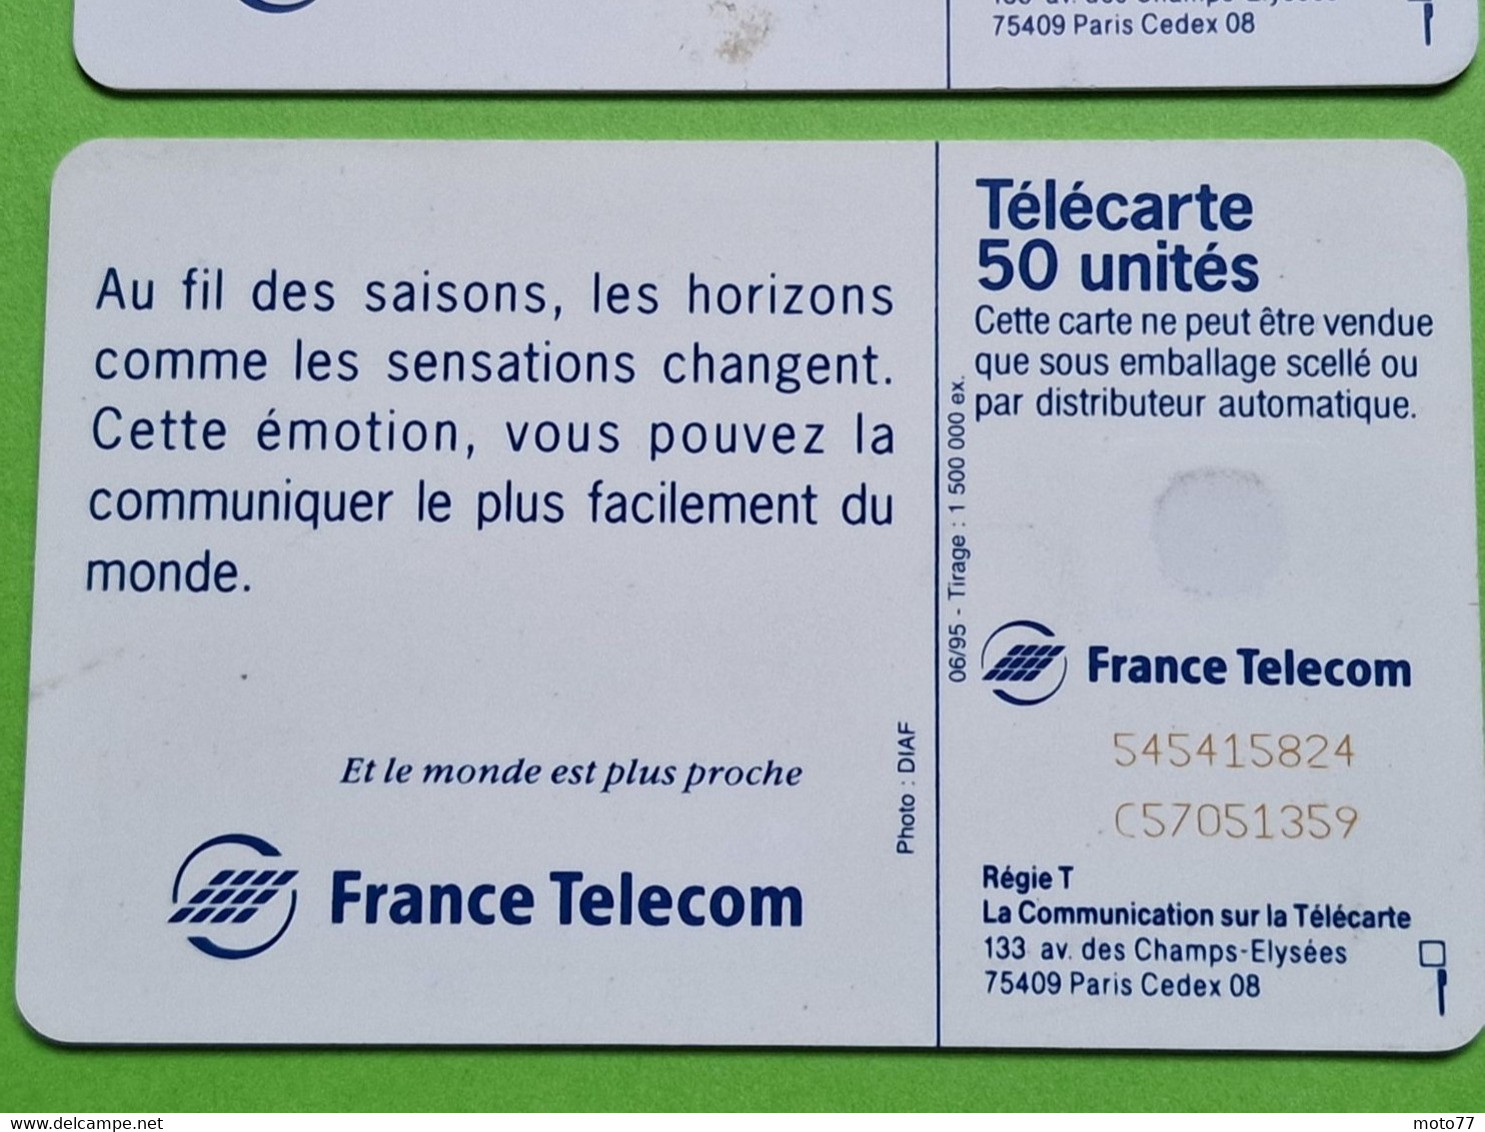 Lot série des 4 cartes téléphonique de France - VIDE - Télécarte Cabine téléphone - Les 4 saisons - 1994 95